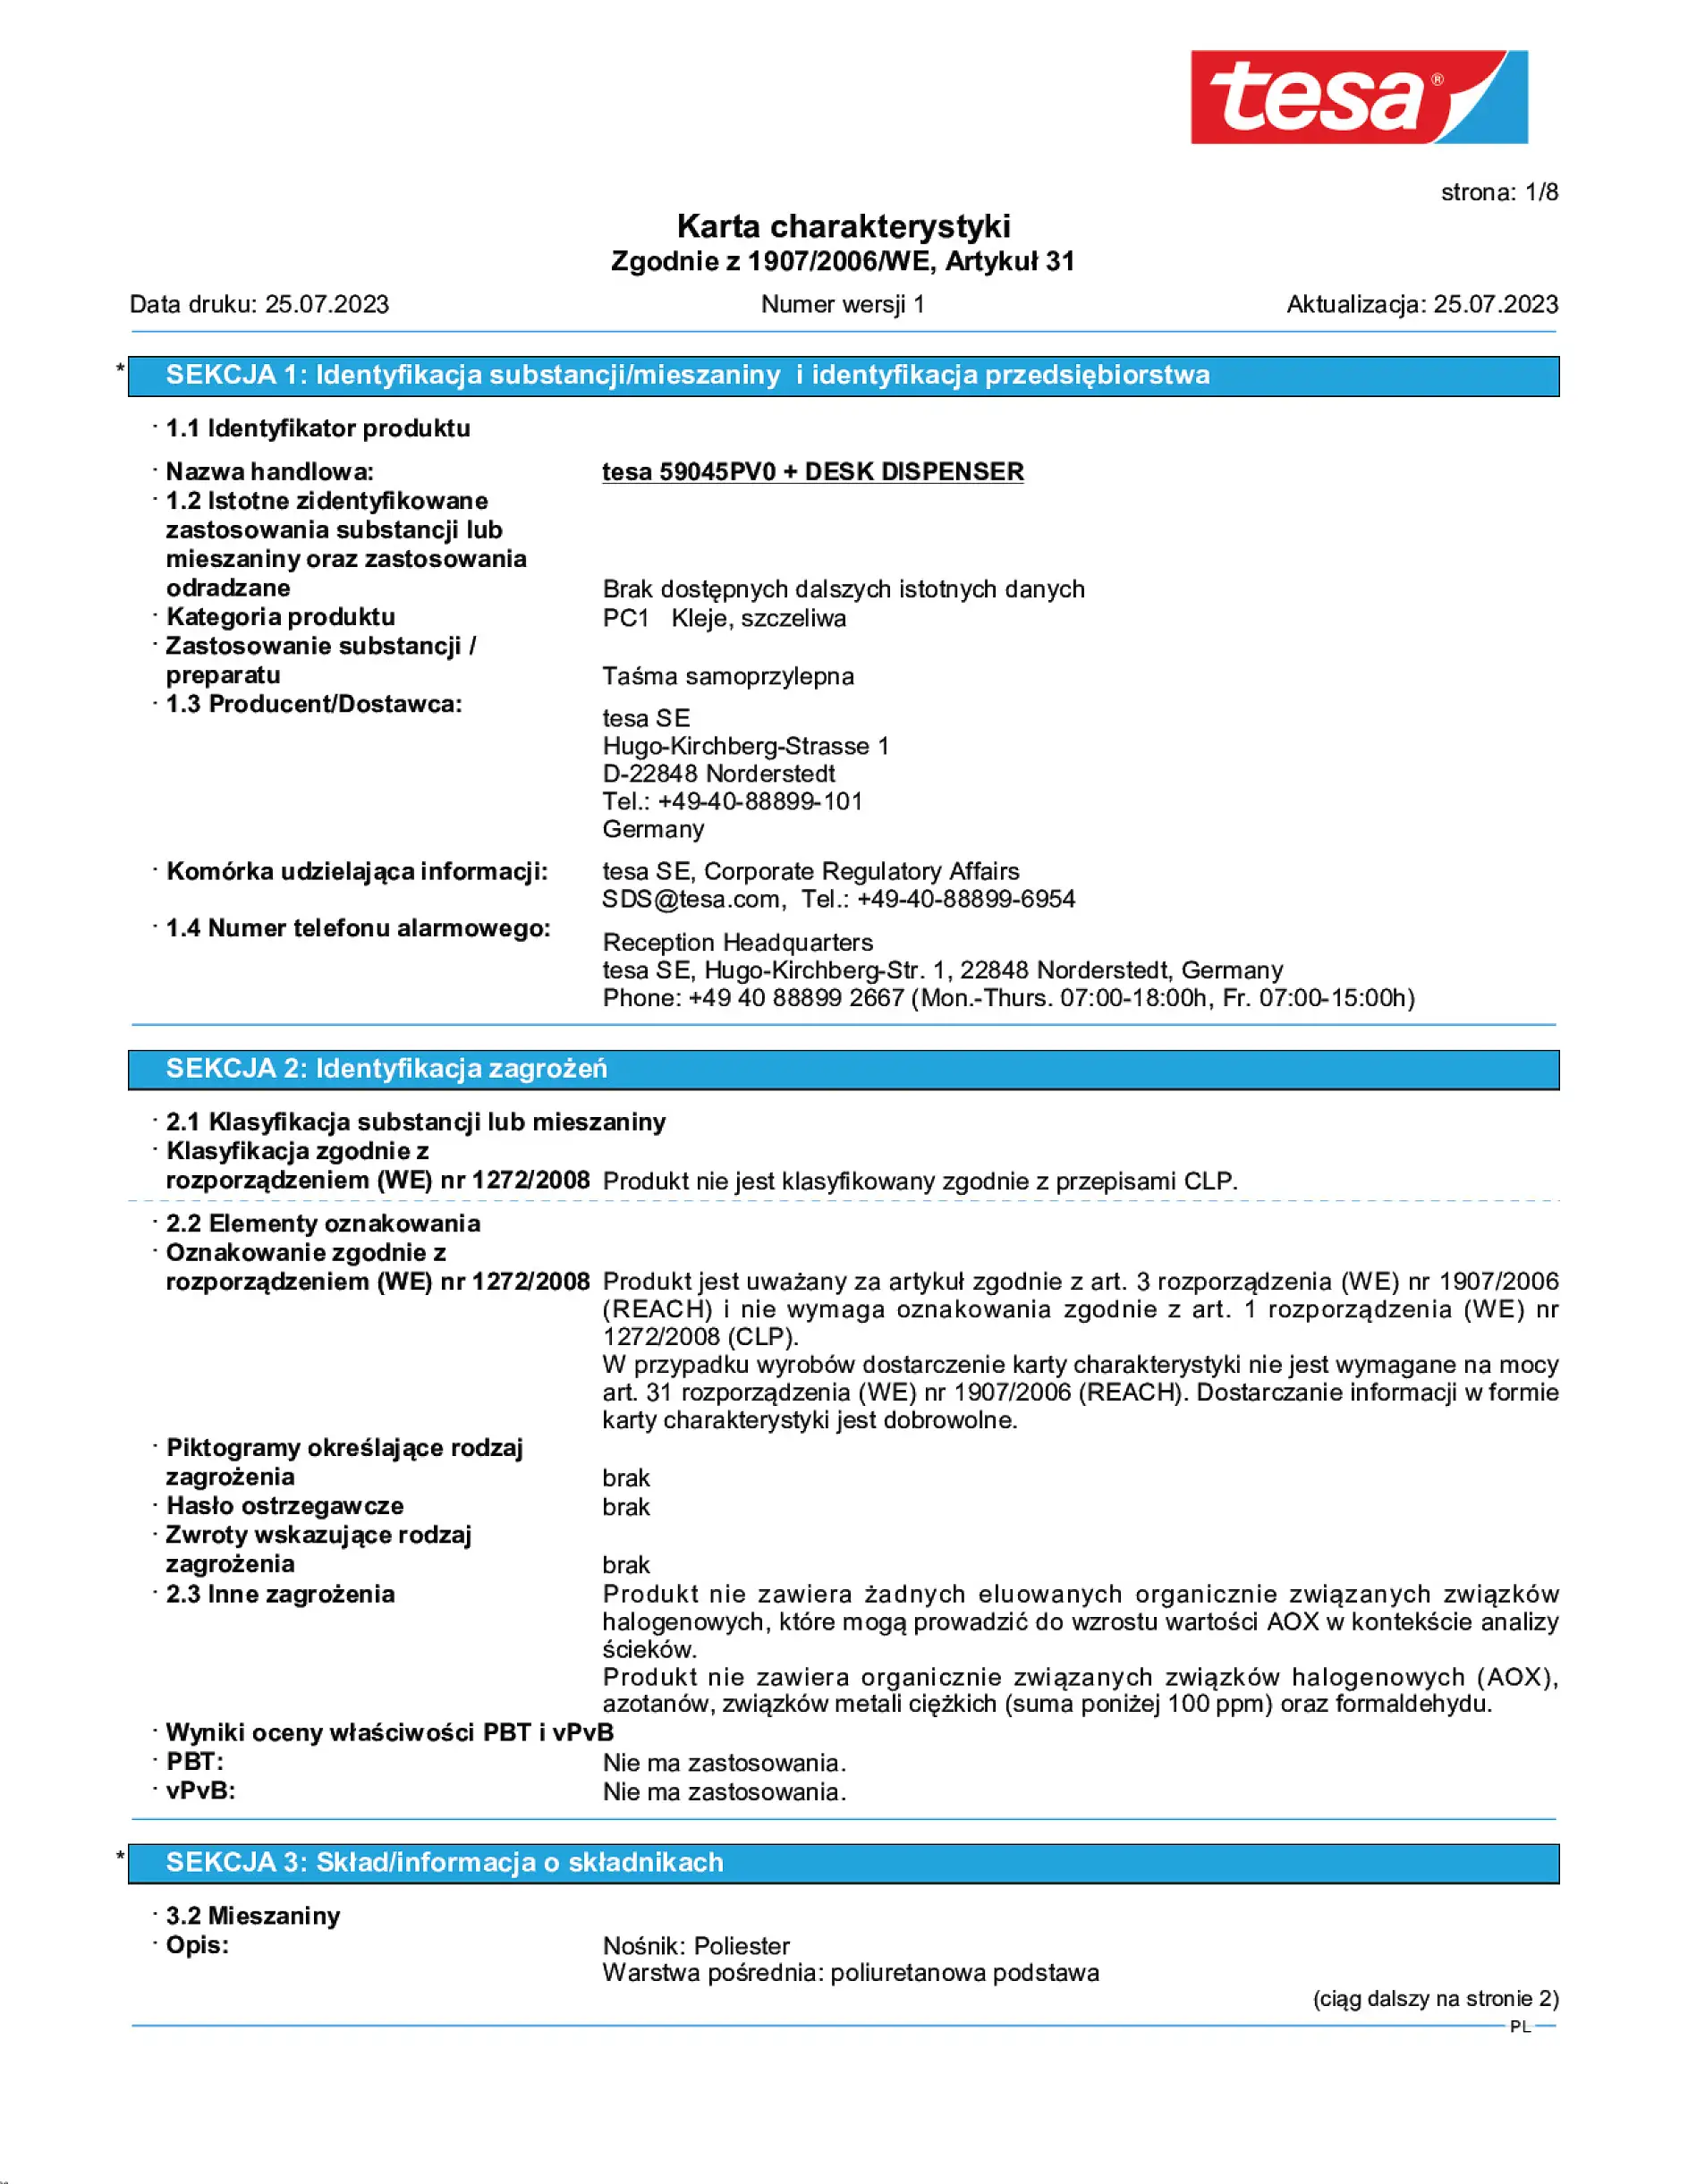 Safety data sheet_tesafilm® 59045_pl-PL_v1